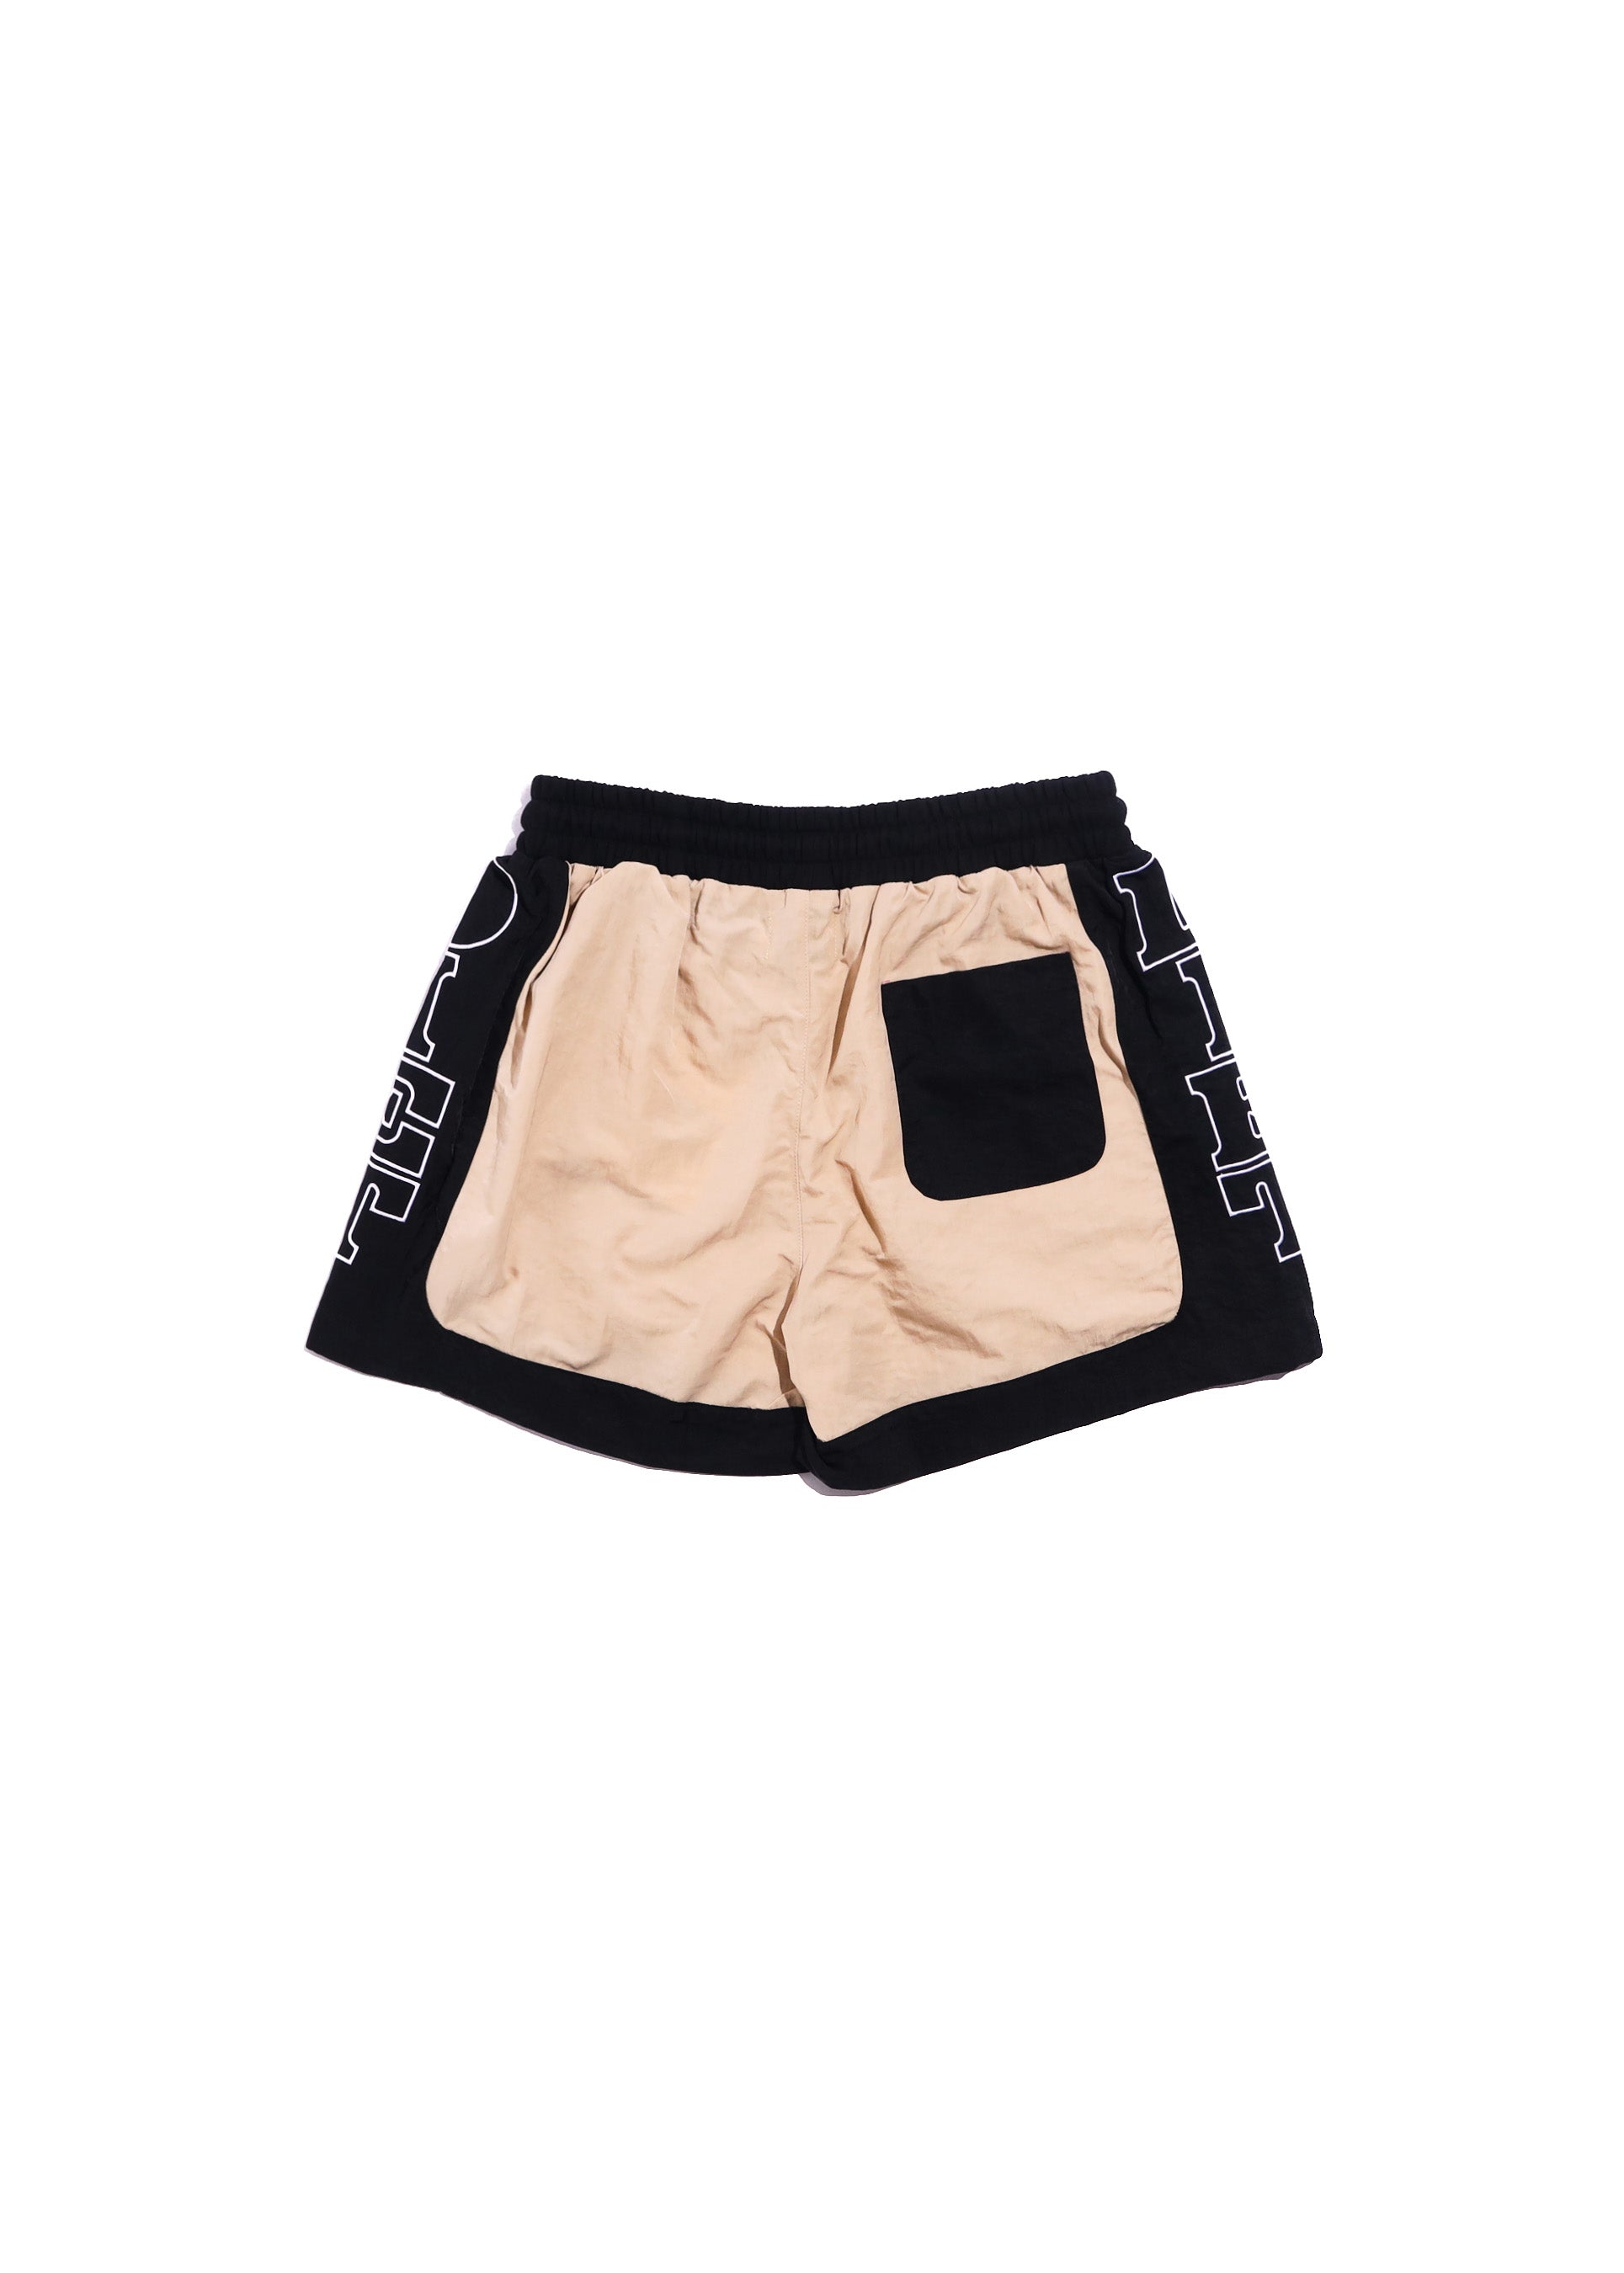 Nylon Row Shorts - Tan/Black